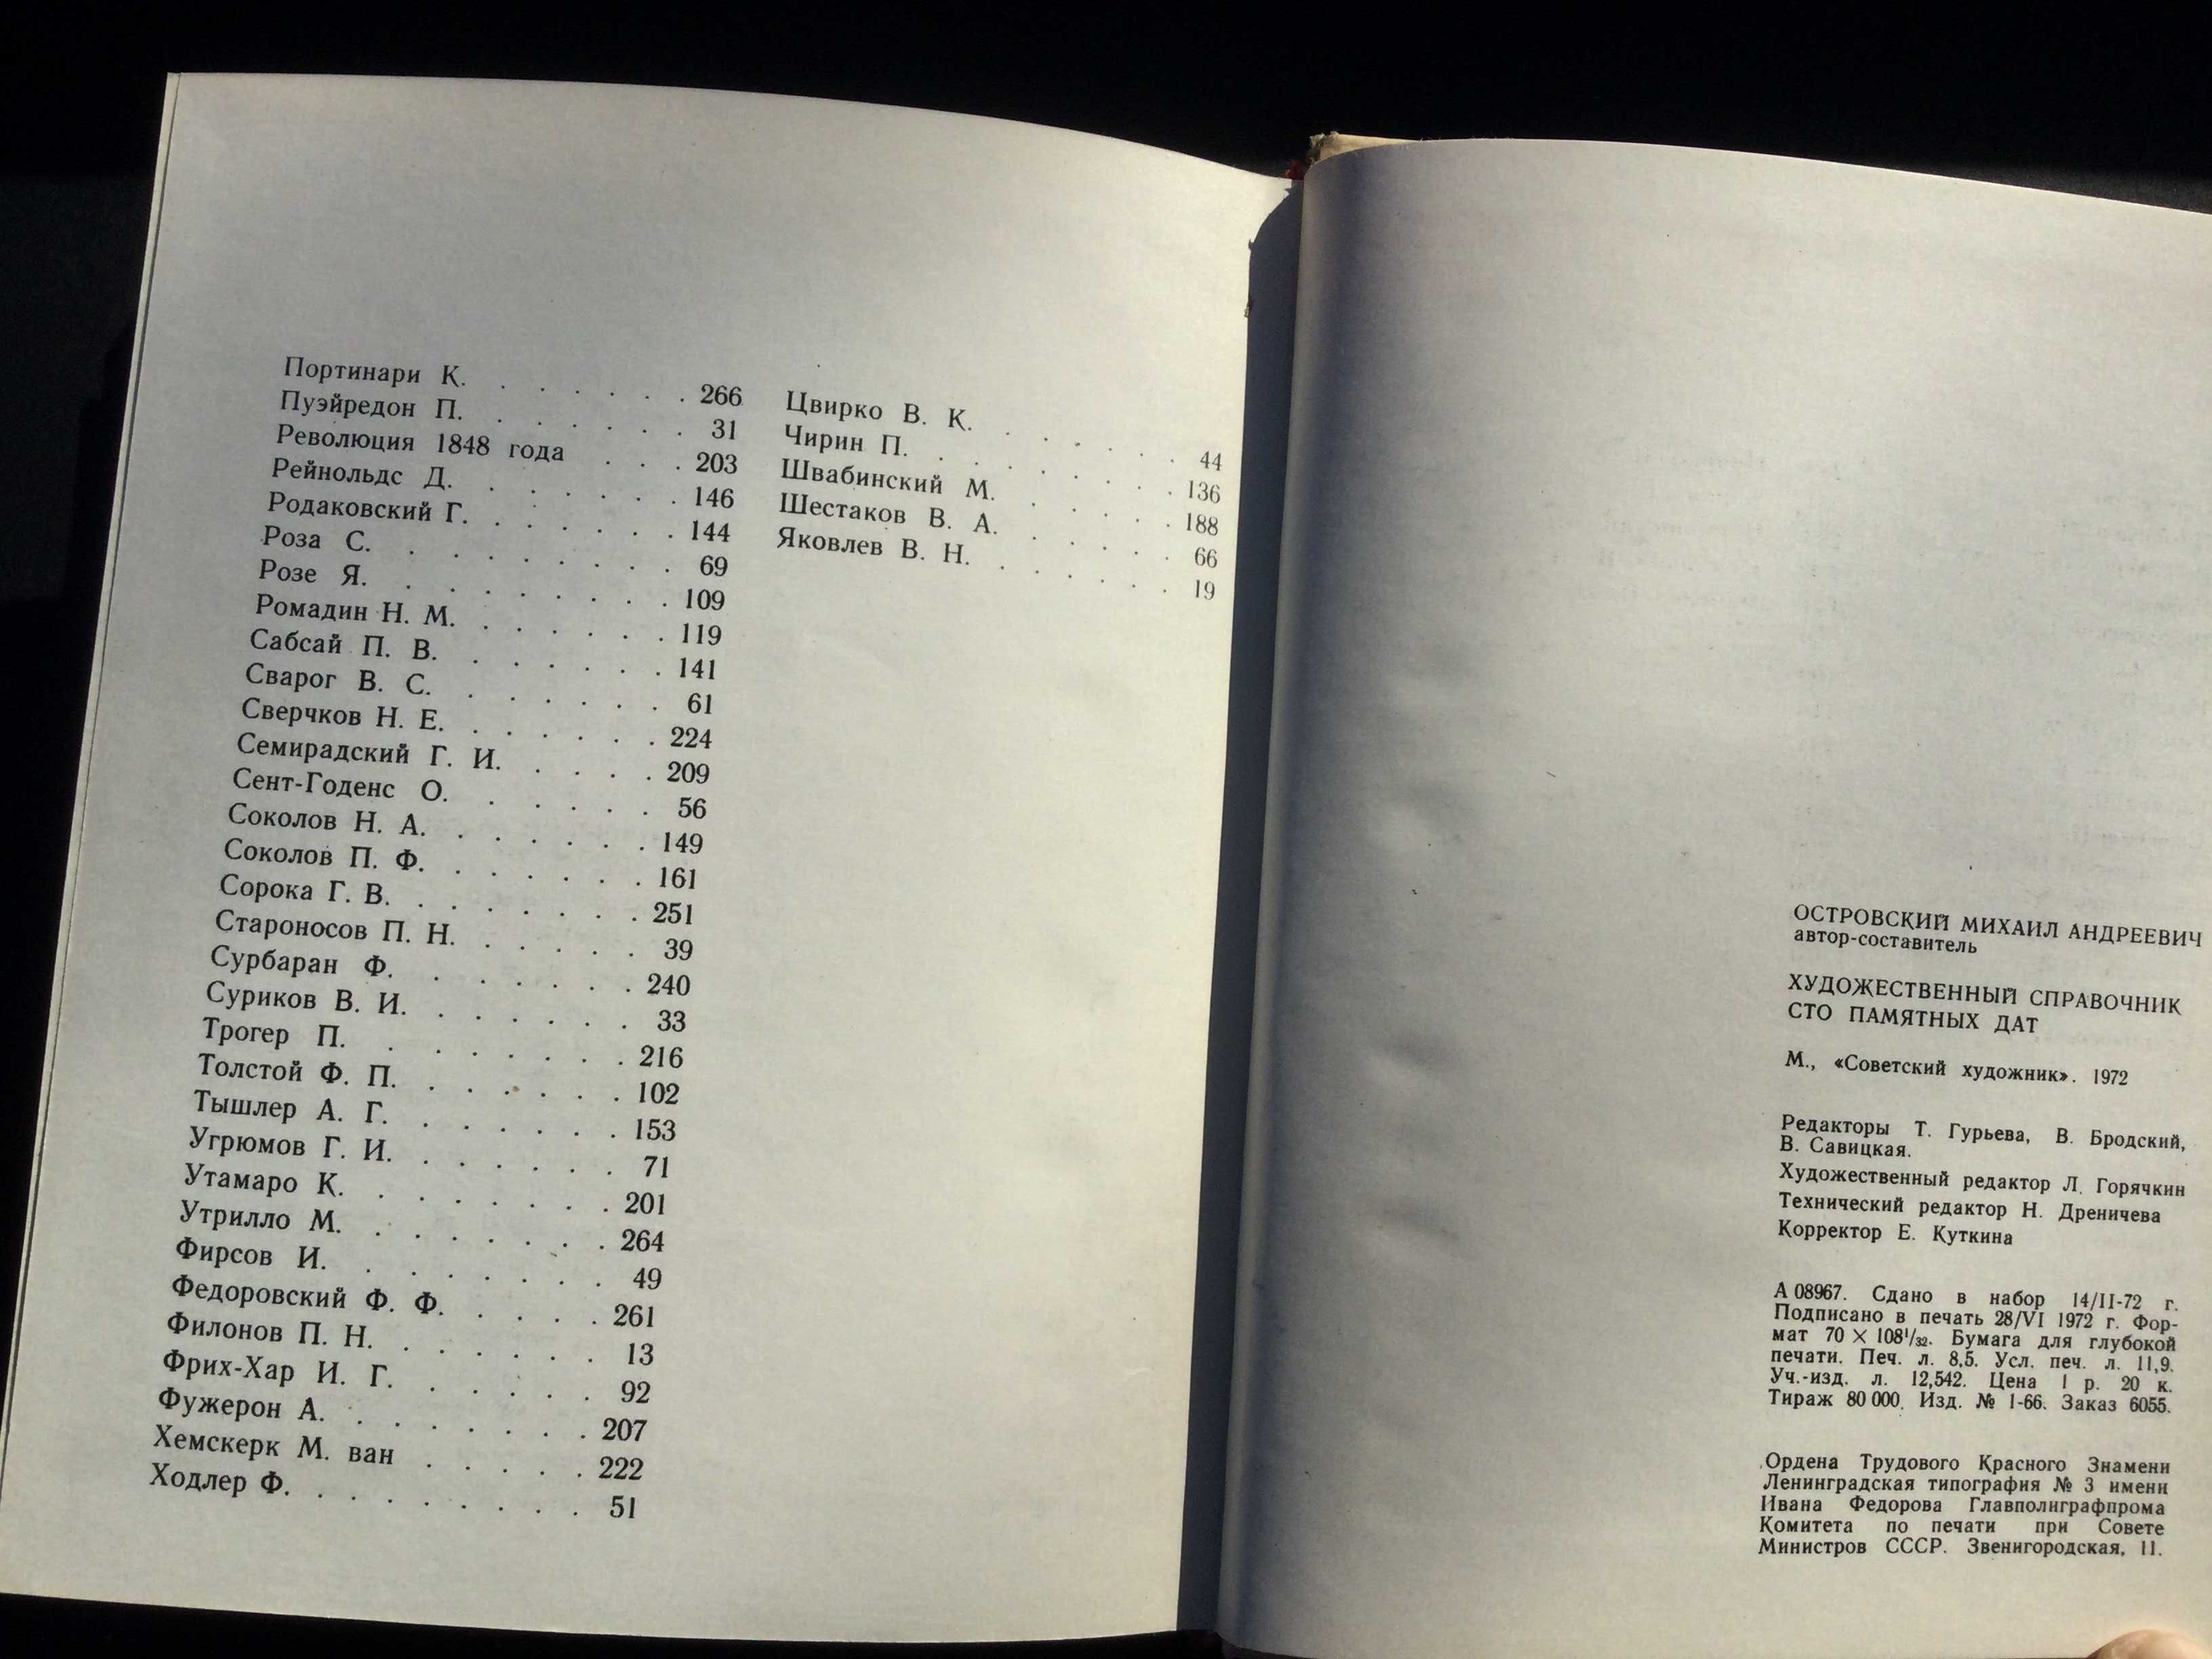 книга художественный спраавочник памятных дат 1973